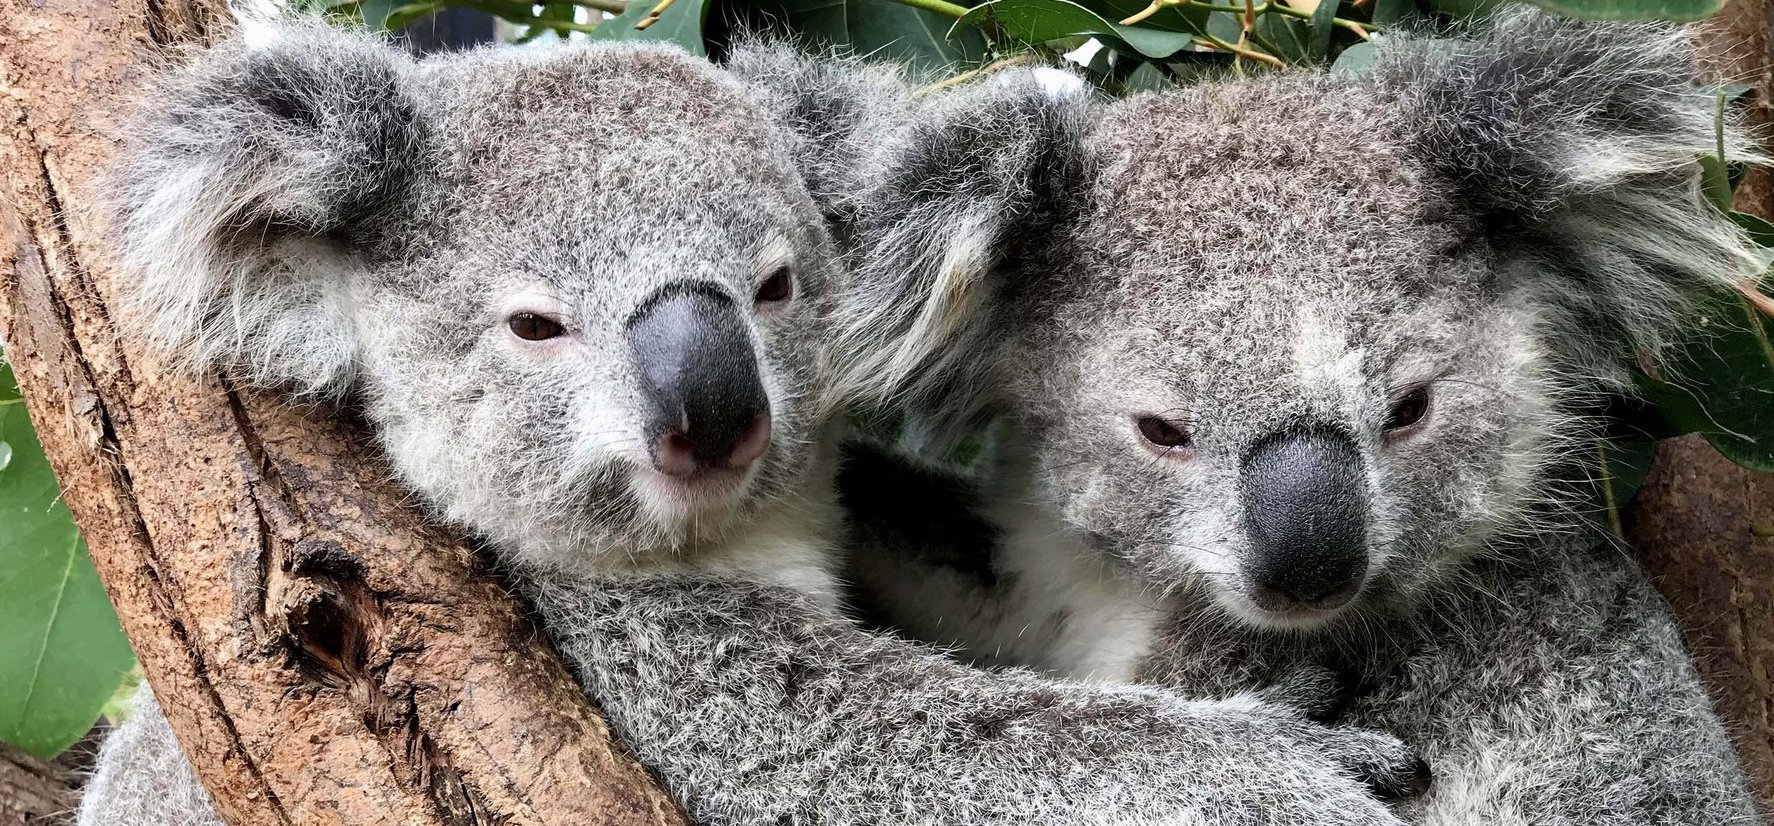 Kihalhatnak a koalák? Nagyon visszaesett a tündéri növényevők száma – fotók